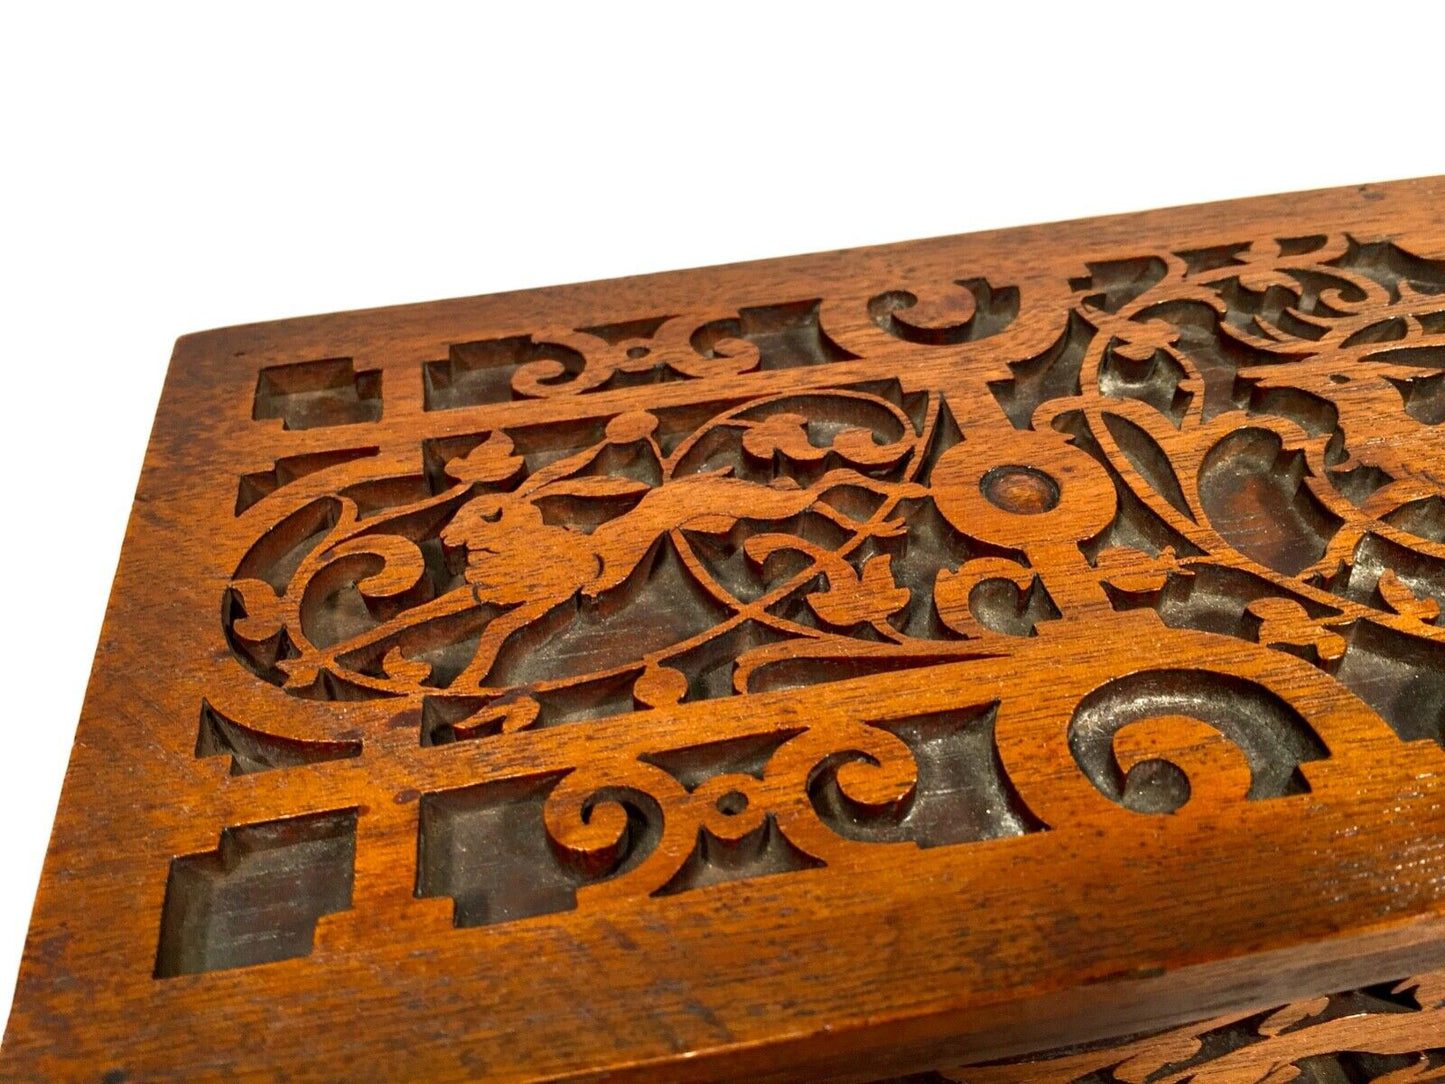 Antique Victorian Fretwork Storage Box / Carved Wooden / 19th Century